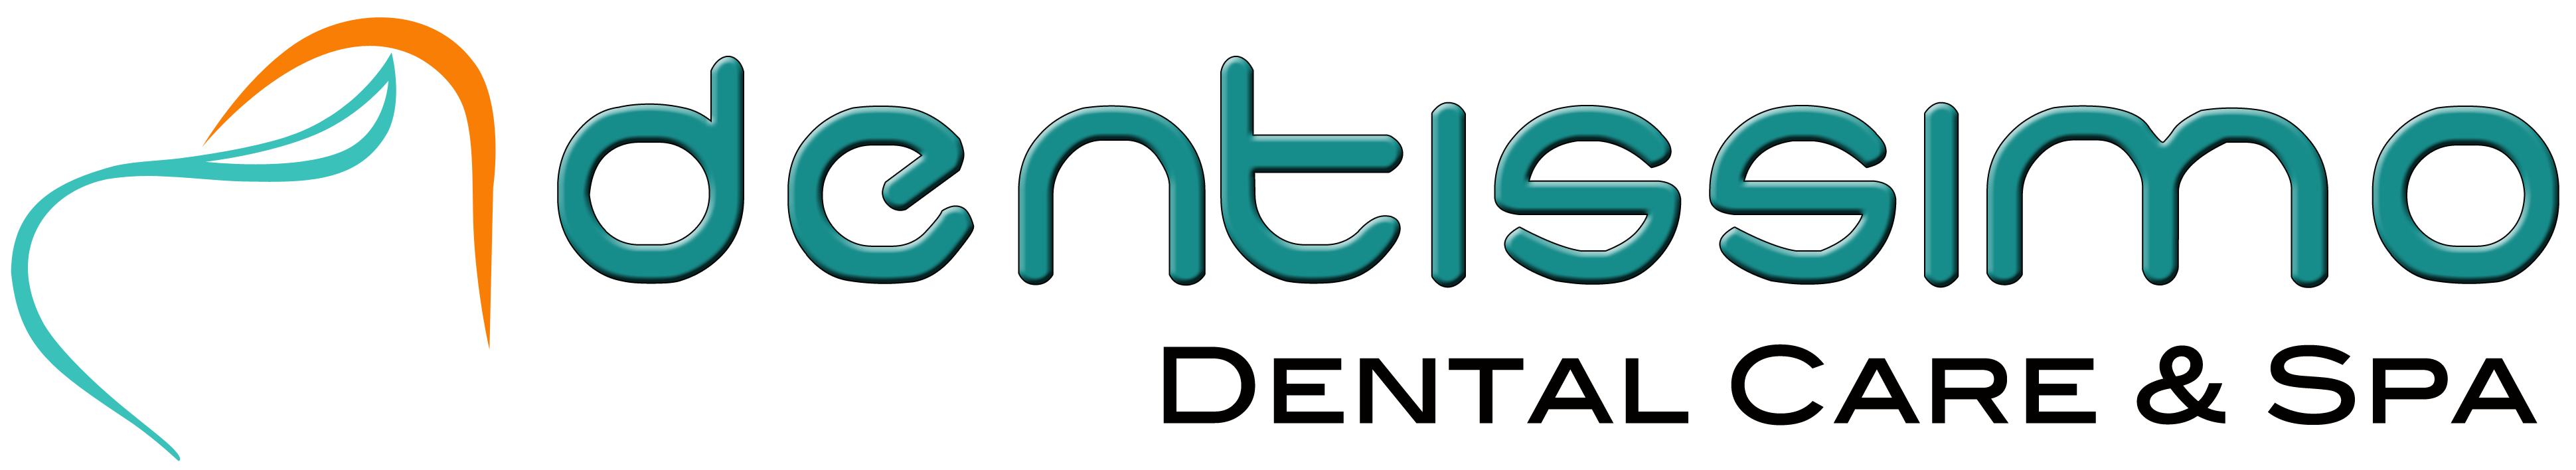 Dentissimo Dental Care & Spa Logo